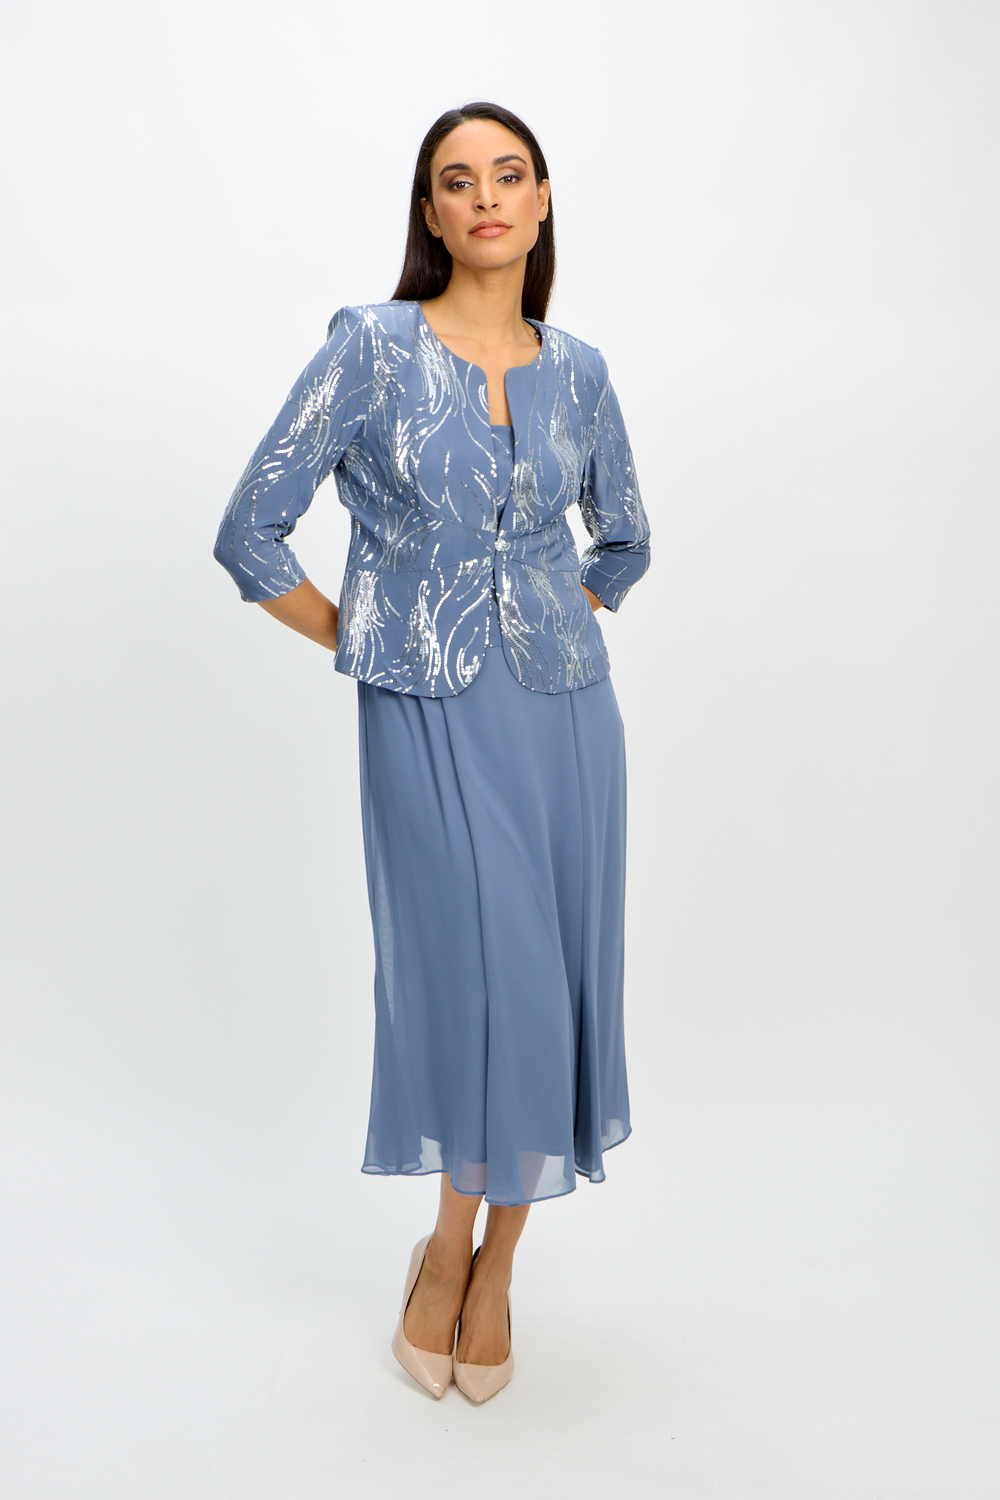 Robe veste longueur thé modèle 1962675. Bleu Acier